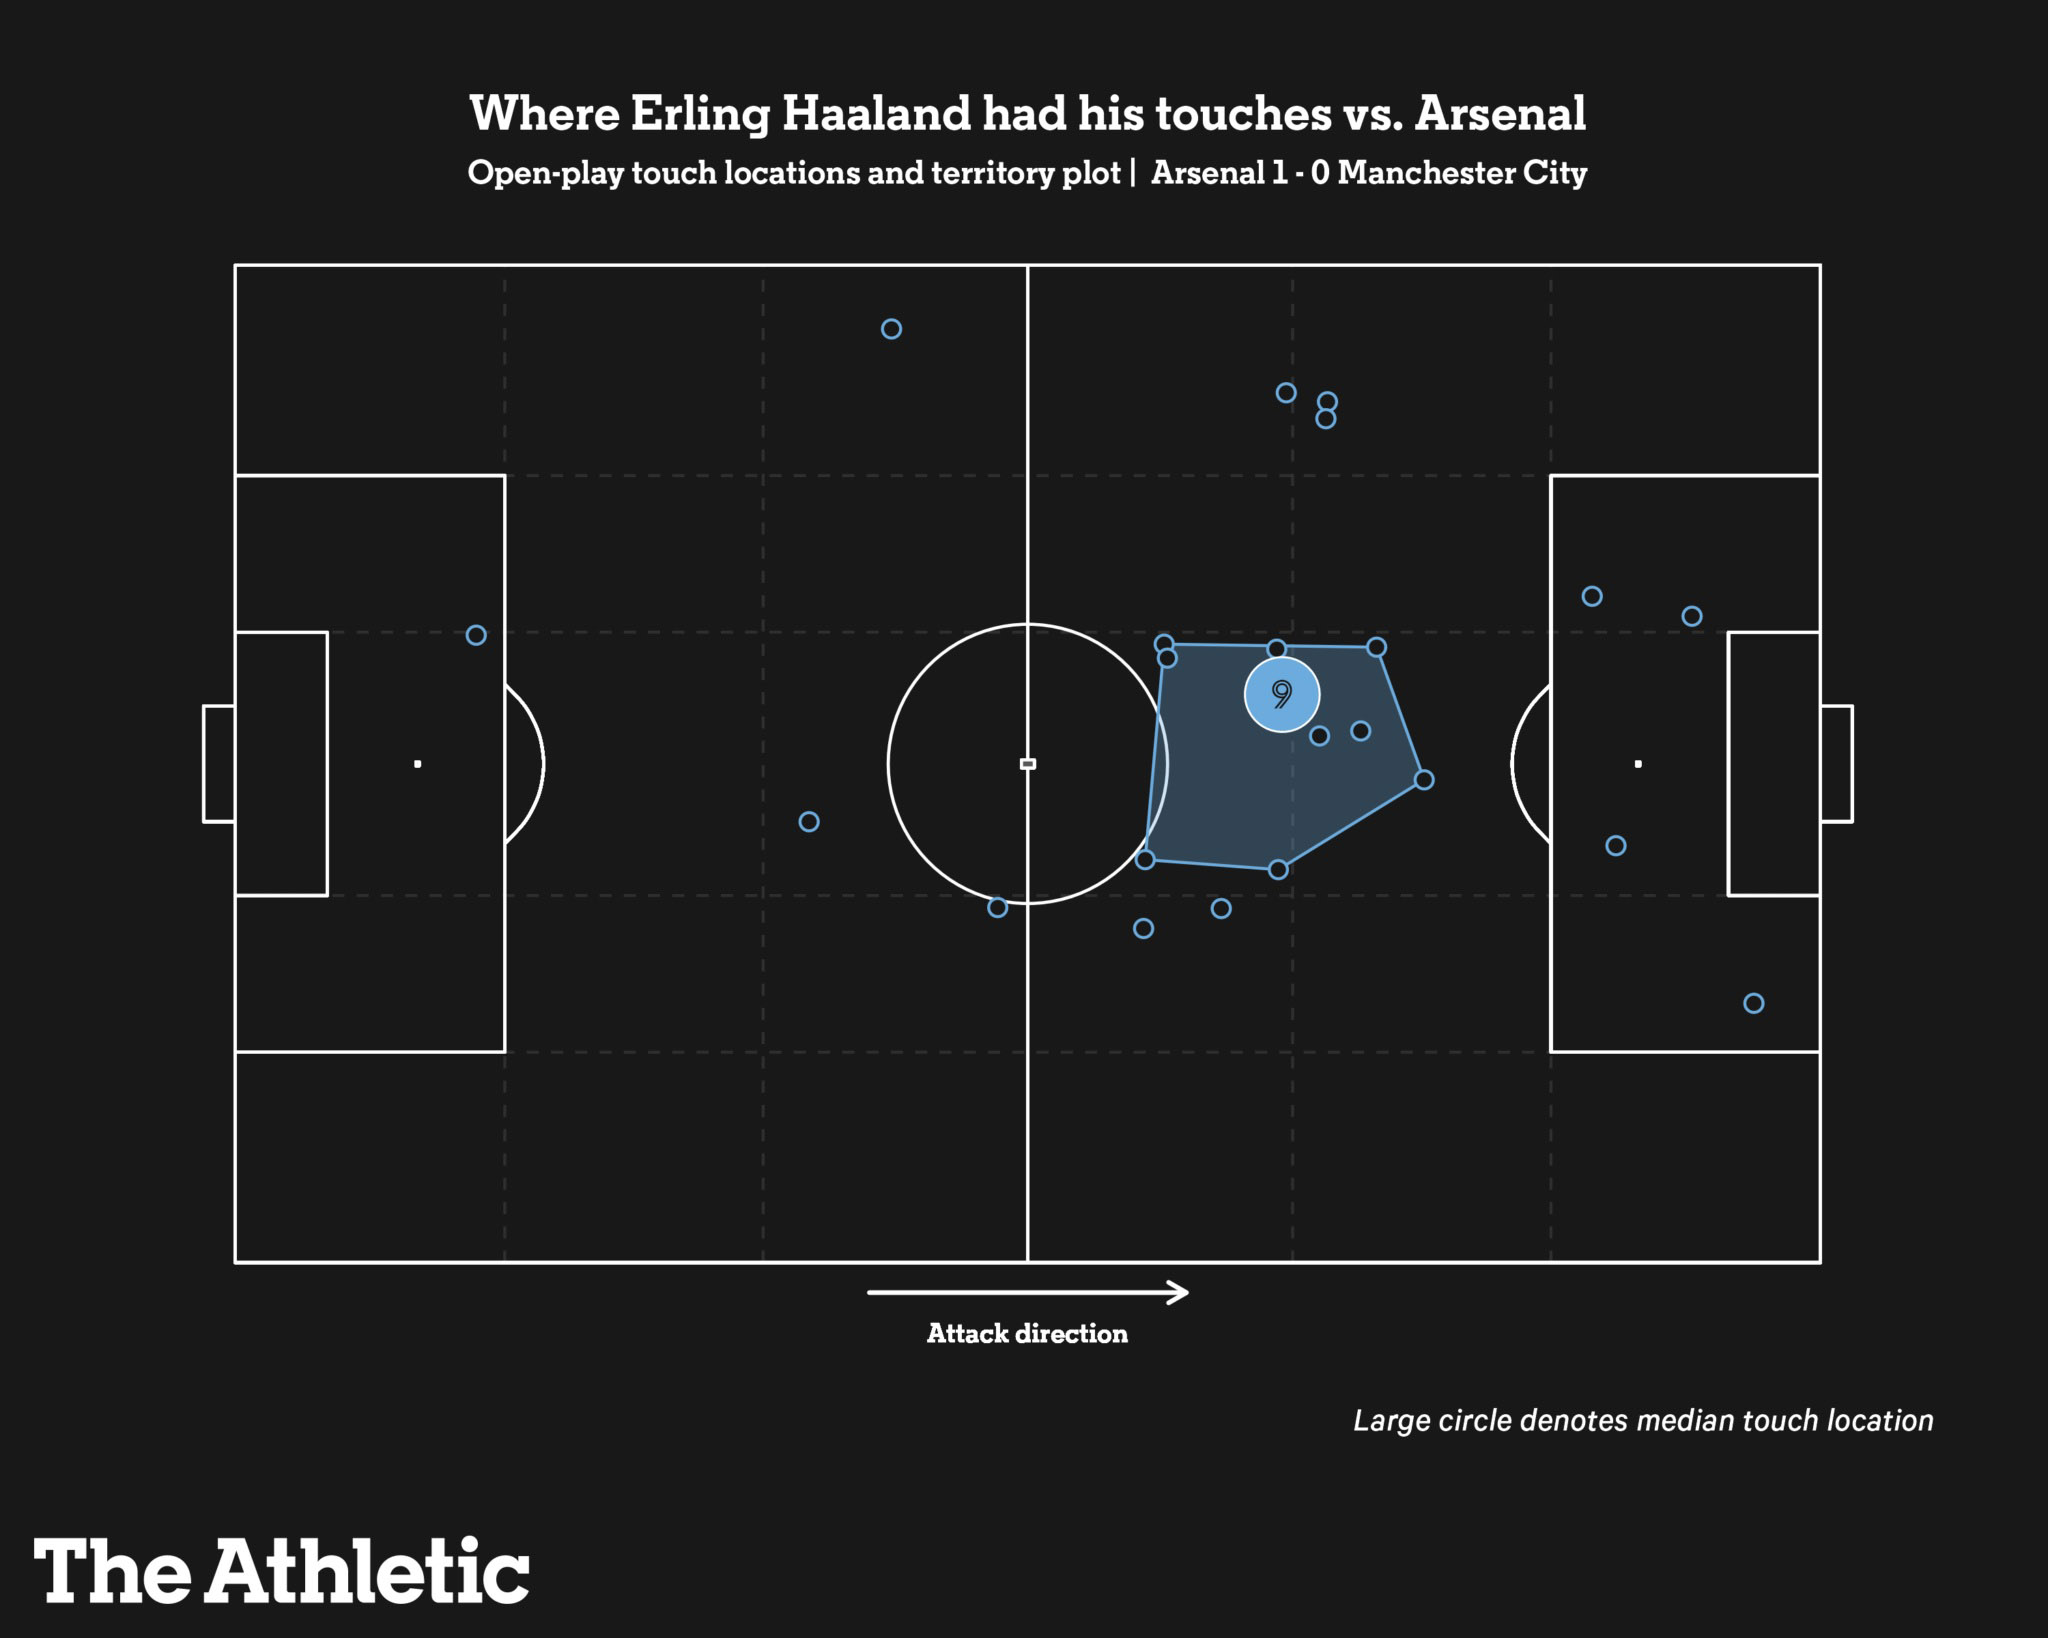 Thống kê này trong trận gặp Arsenal sẽ được nhắc đi, nhắc lại với Erling Haaland khi anh lần đầu tiên nhận chỉ số bàn thắng kỳ vọng bằng 0. Ảnh: The Athletic